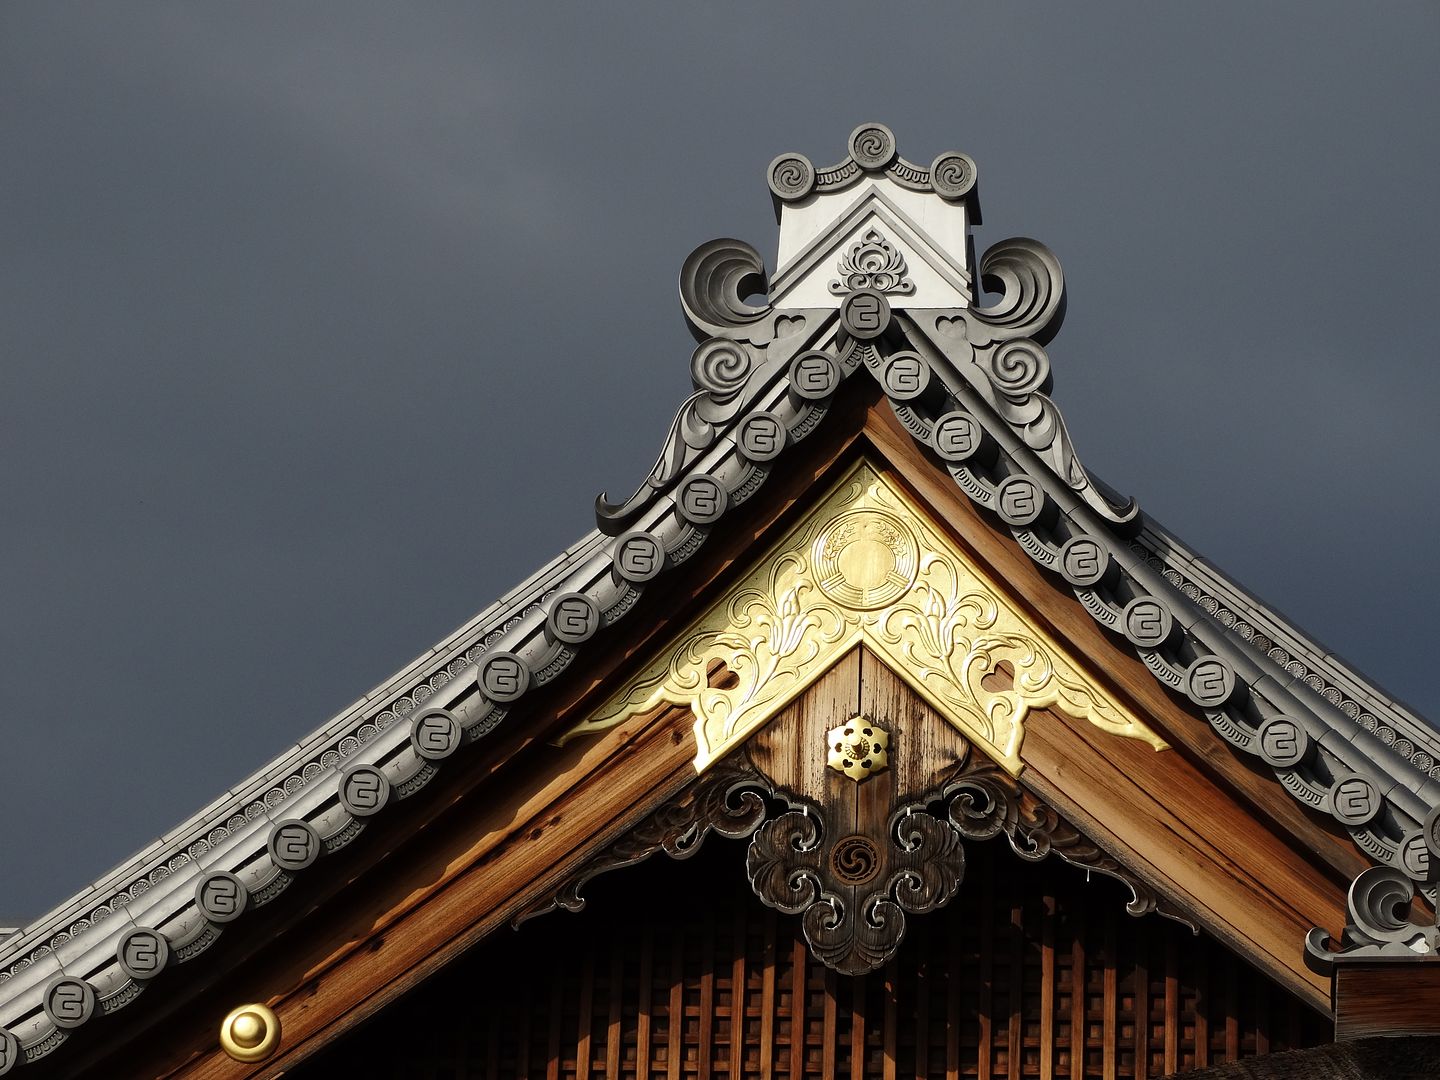 Fushimi Inari Shrine in Japan photo 2013-12-23DSC00515_zps08a1b506.jpg